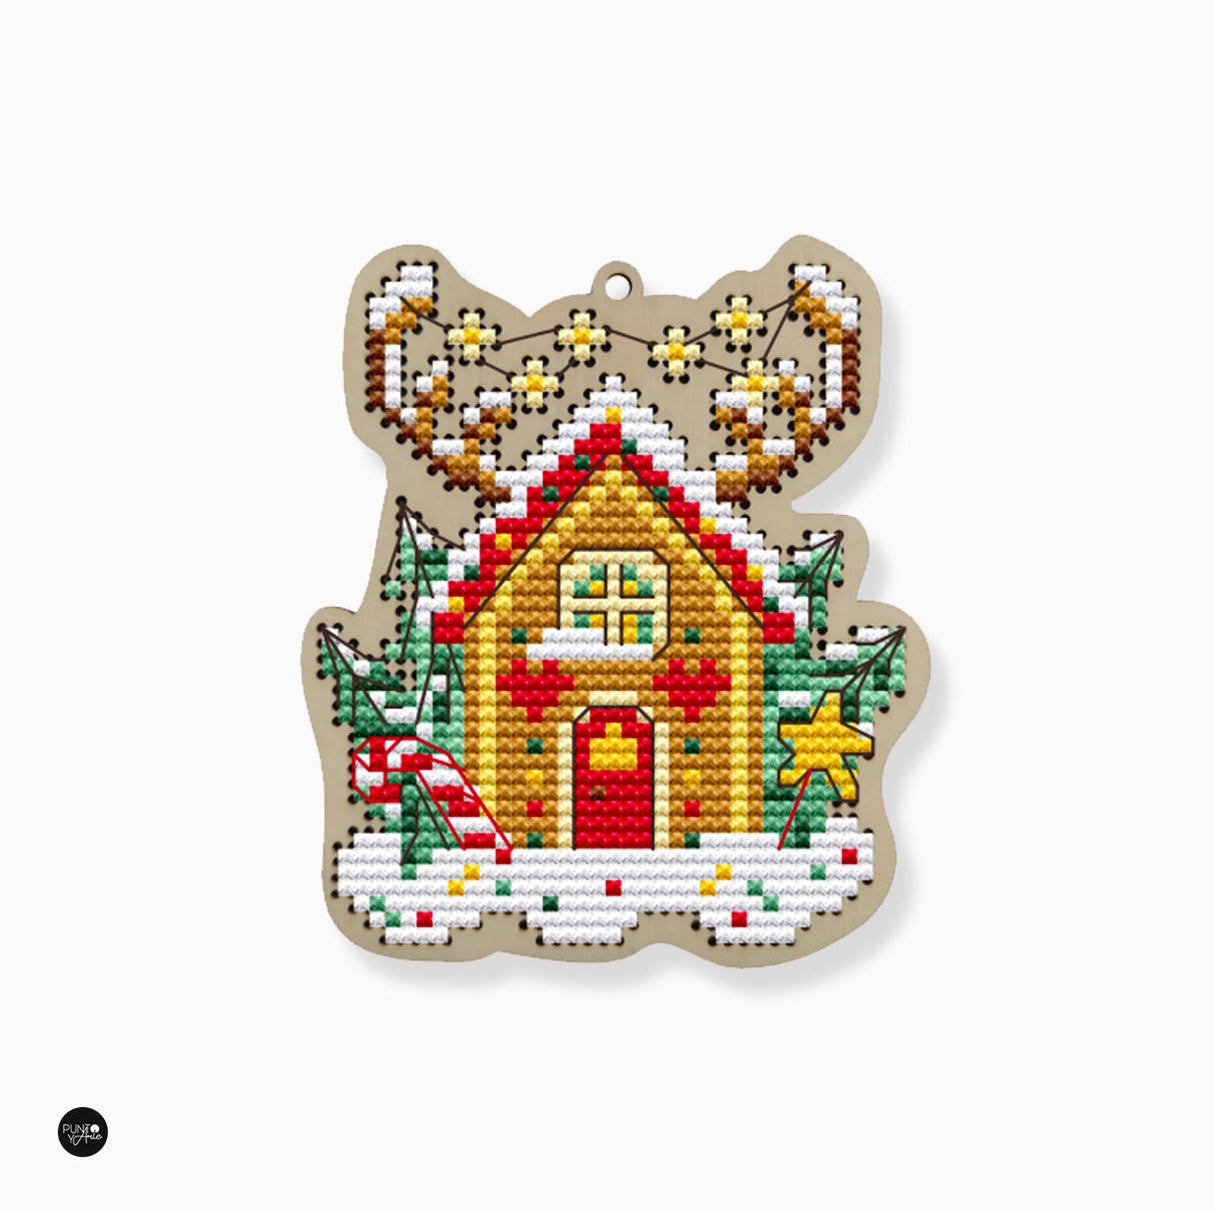 Cozy Christmas house - Wizardi - Cross stitch kit KF022/90